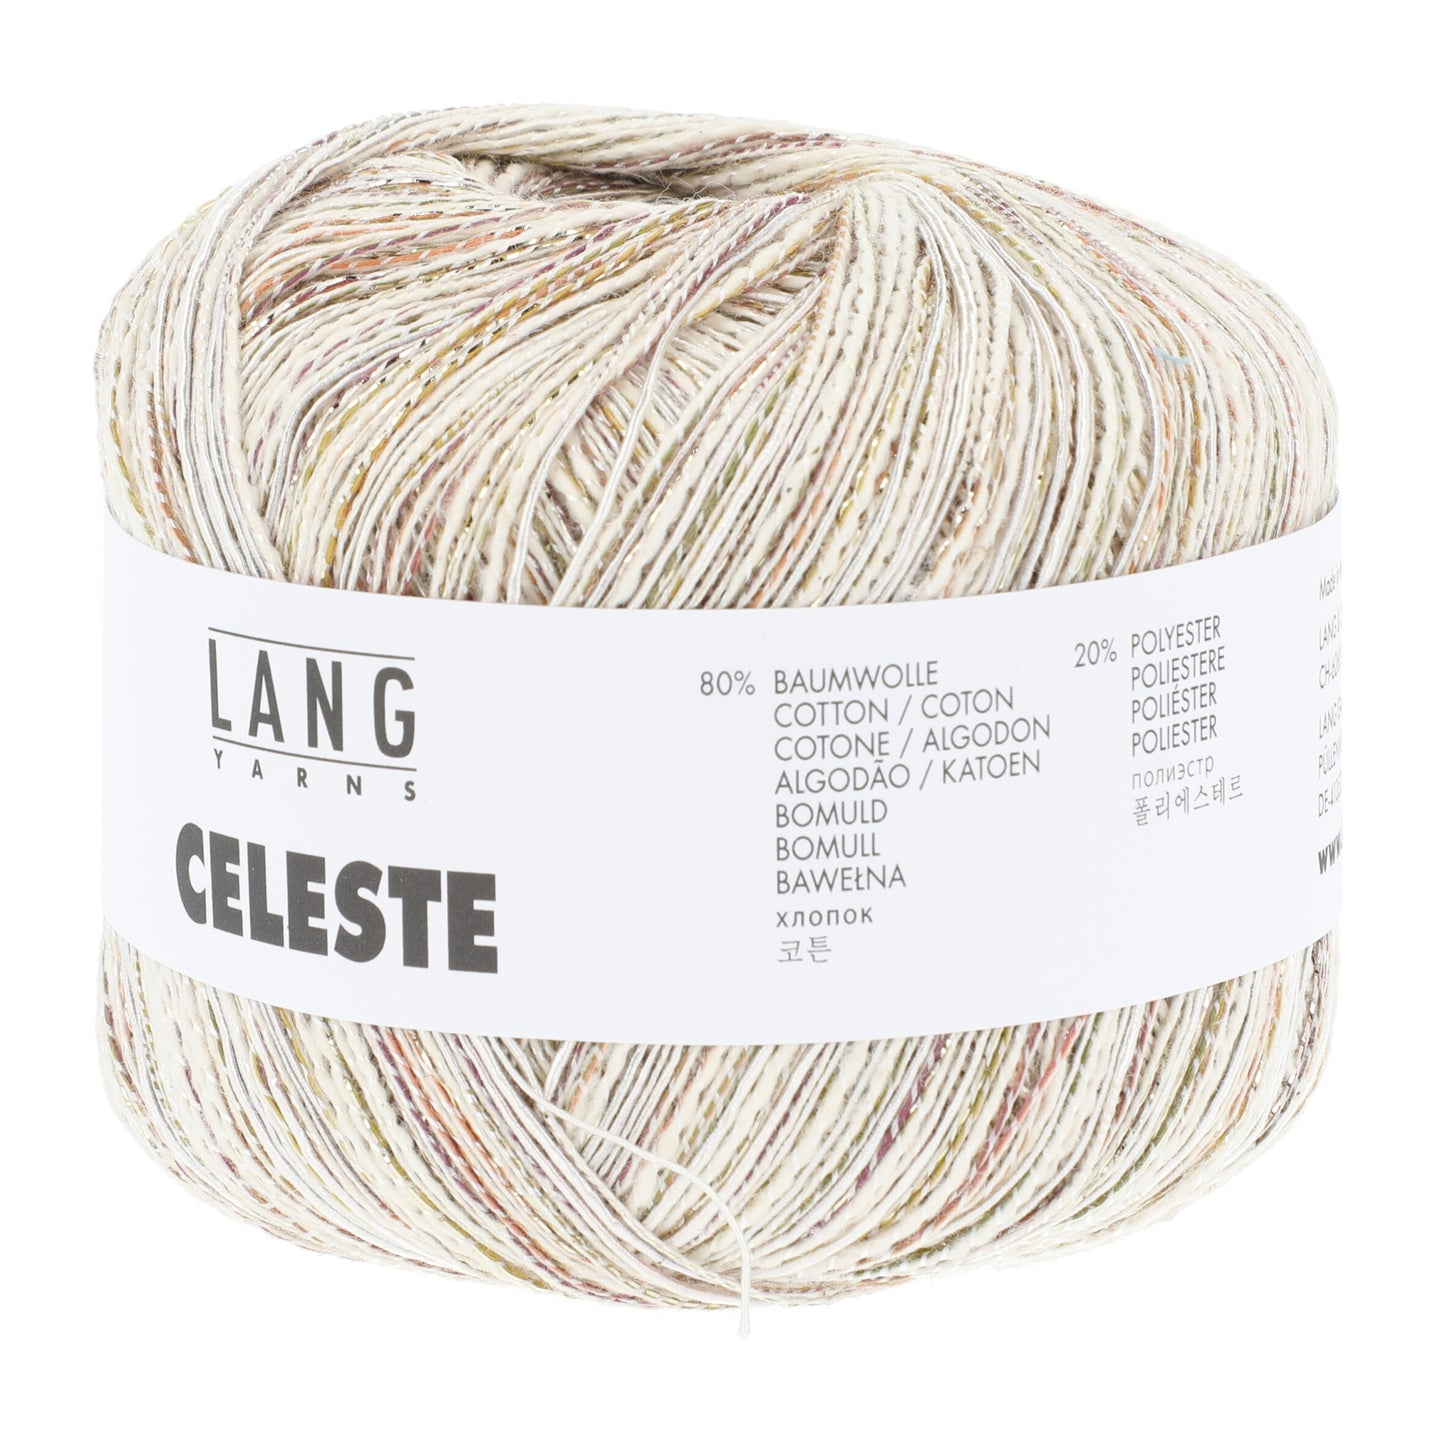 Lang Tarns Celeste / 1110.0094